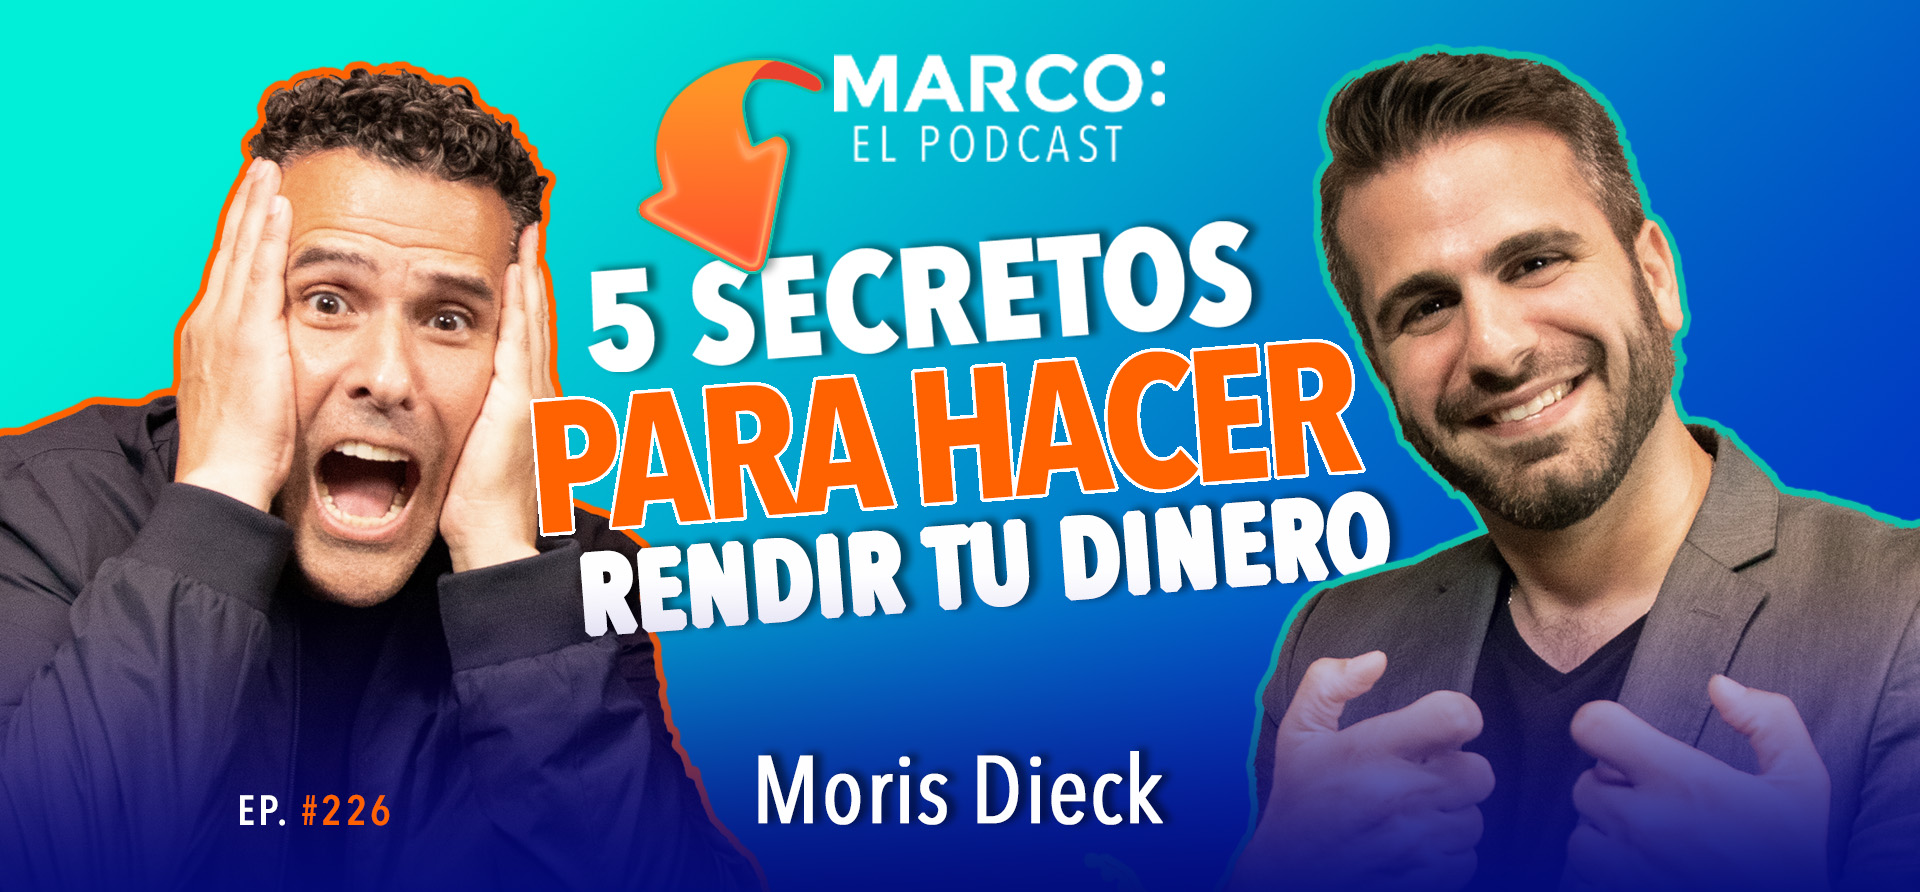 Rendir dinero Moris Dieck En Marco El Podcast